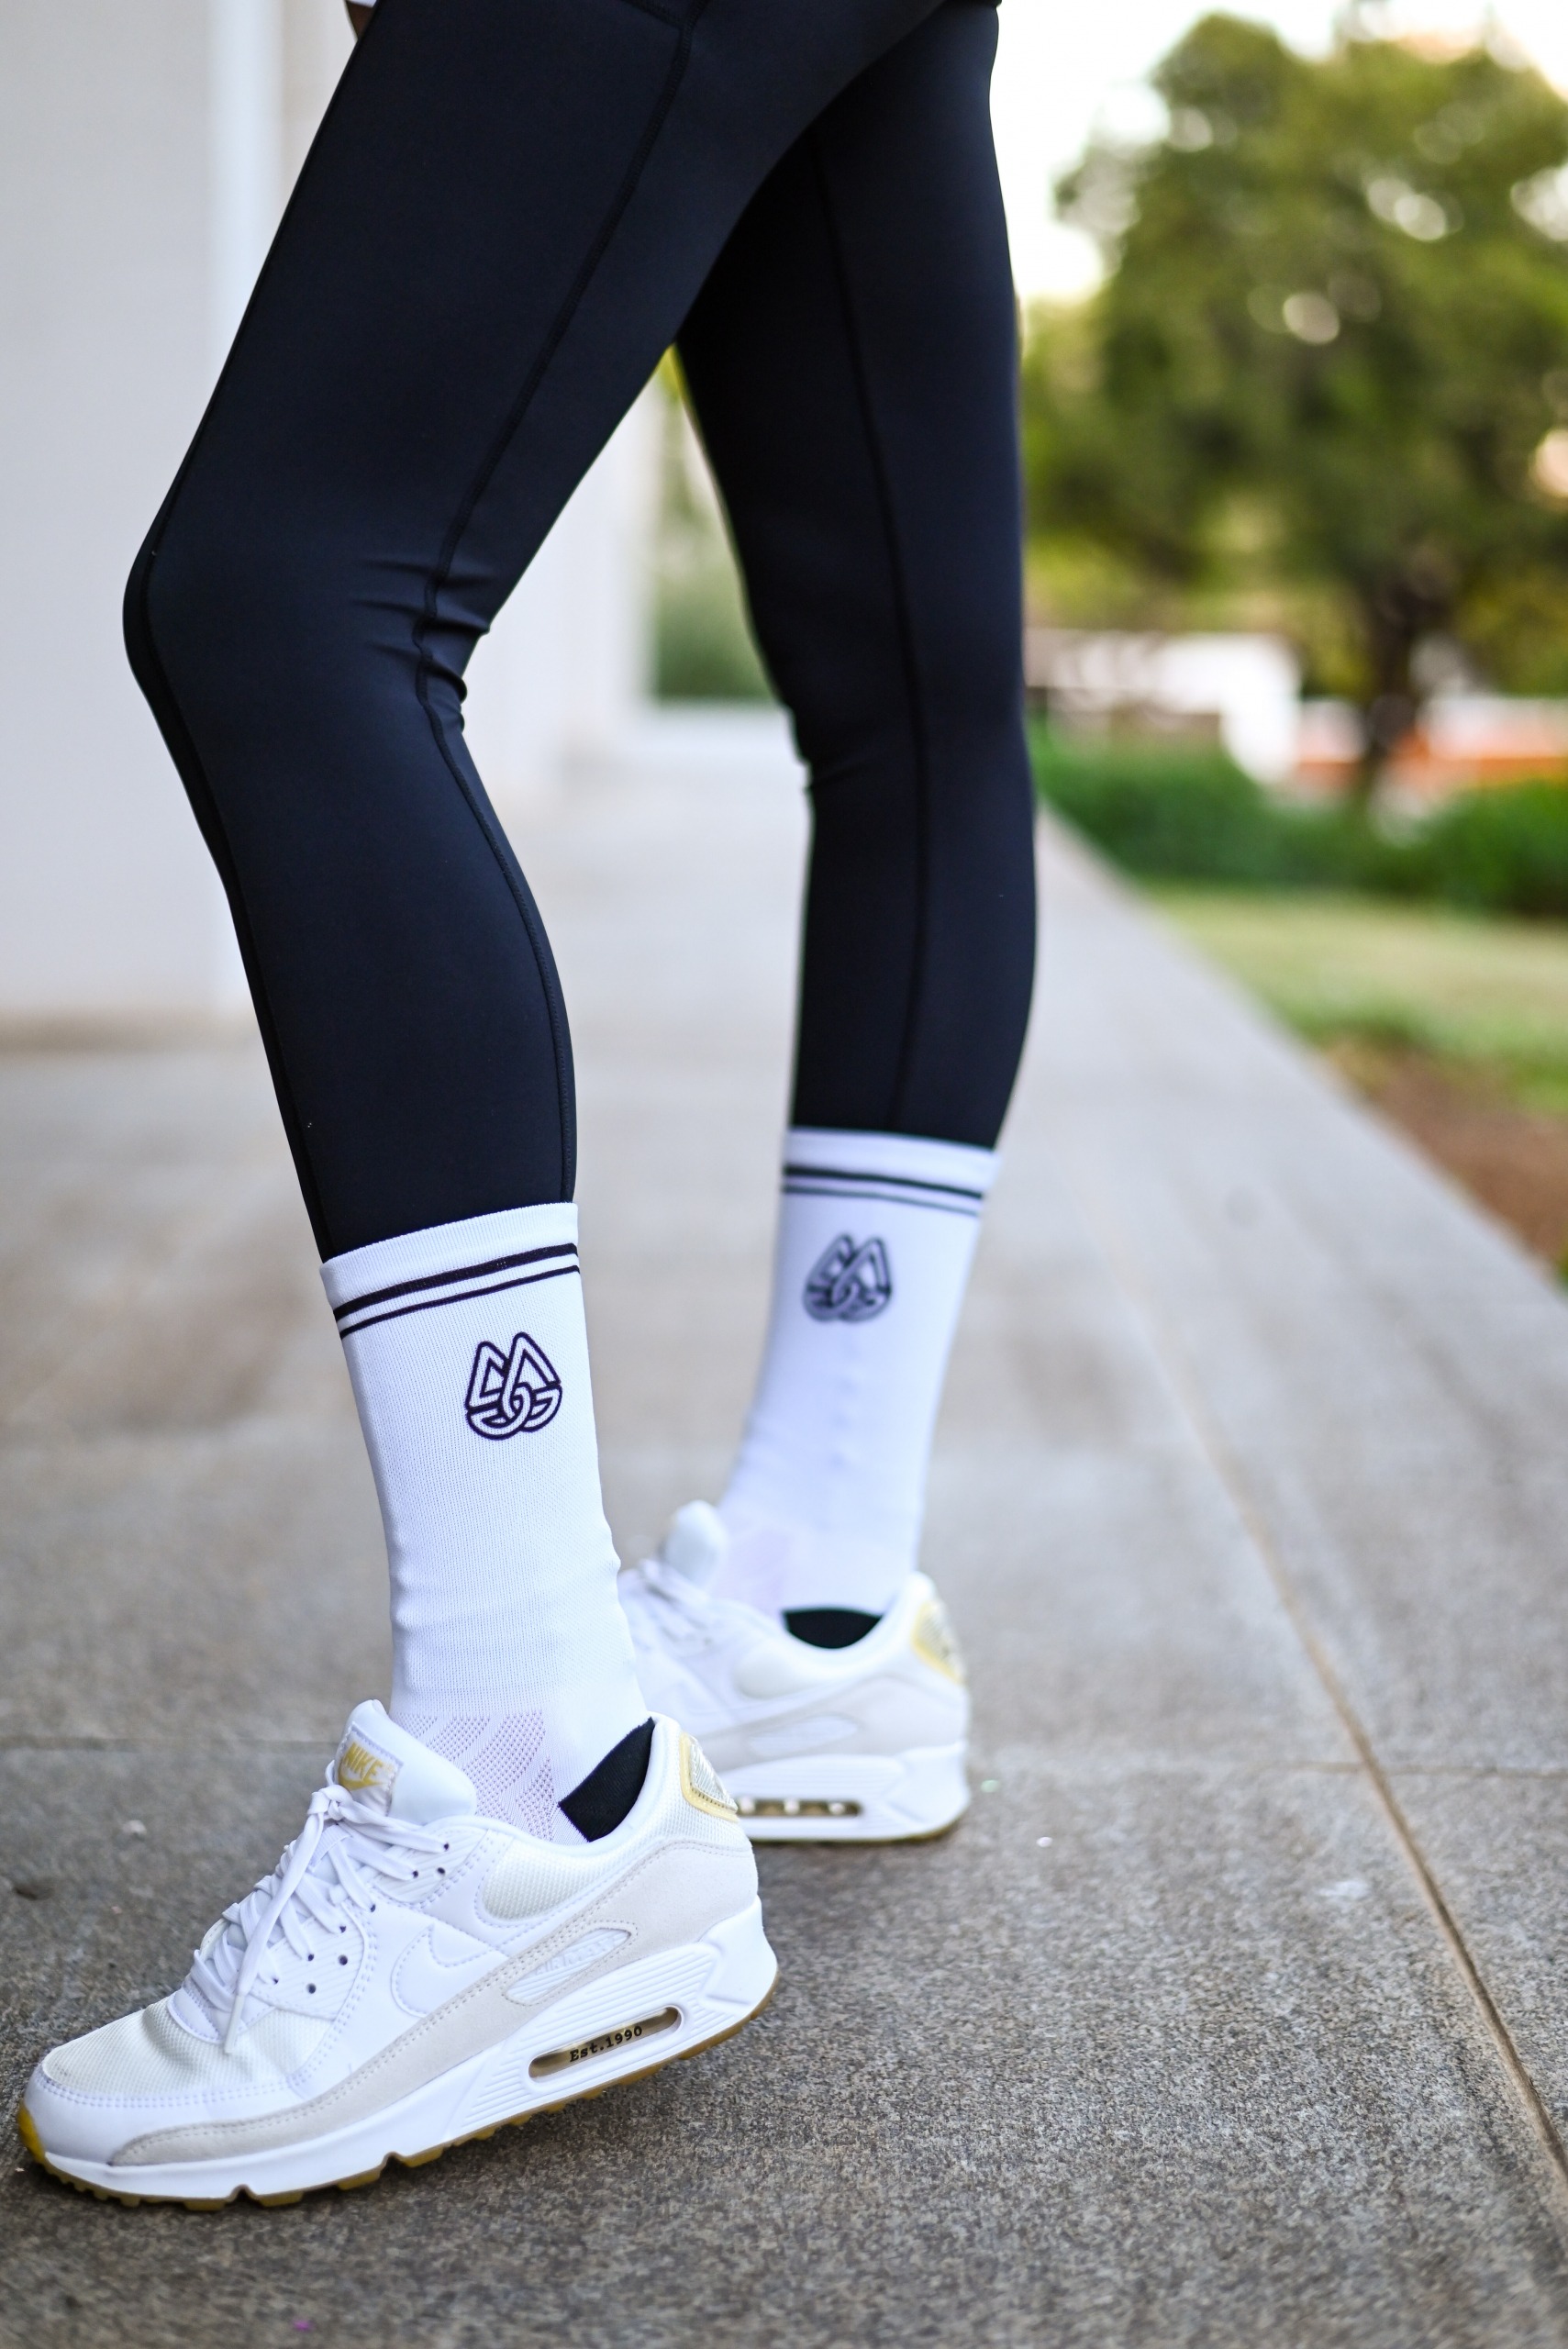 Socks over tights or nahh?? | guys icks for women | TikTok